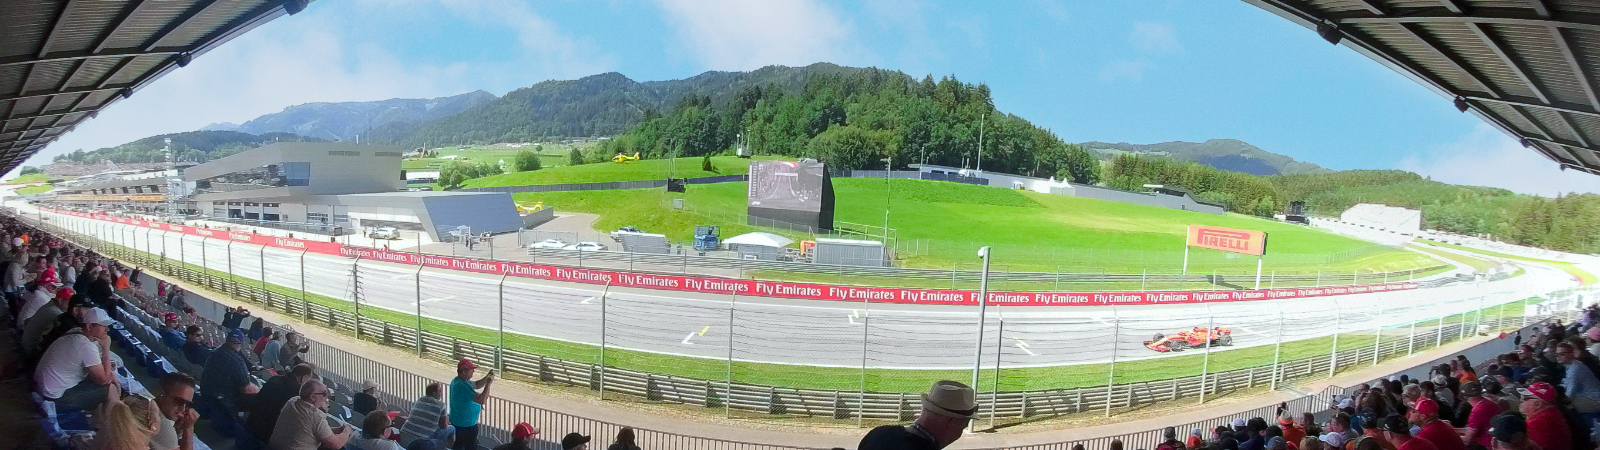 Vstupenka 3 Corner RedBull C,D,E | F1 Rakousko 2023 | Red Bull Ring | Spielberg | Oficilání vstupenky | www.F1austria.com